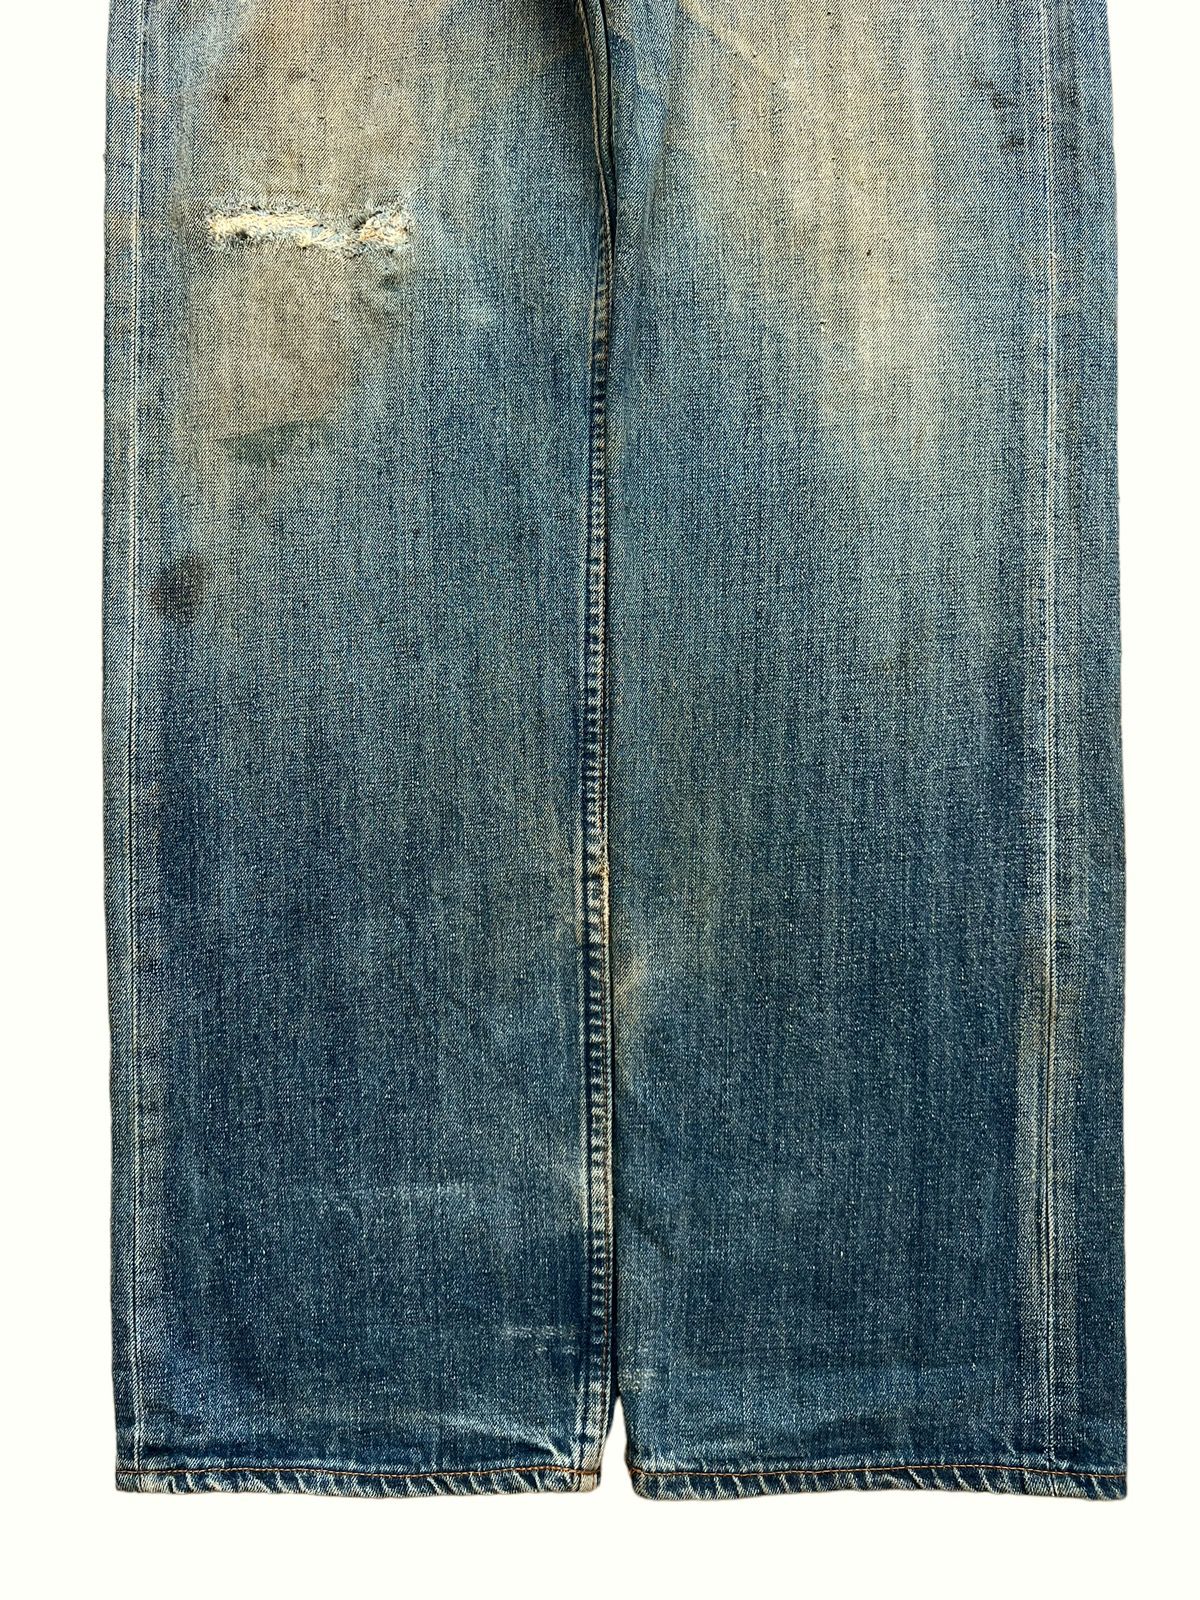 Vintage 90s Levis Distressed Mudwash Patch Denim Jeans 30x35 - 4